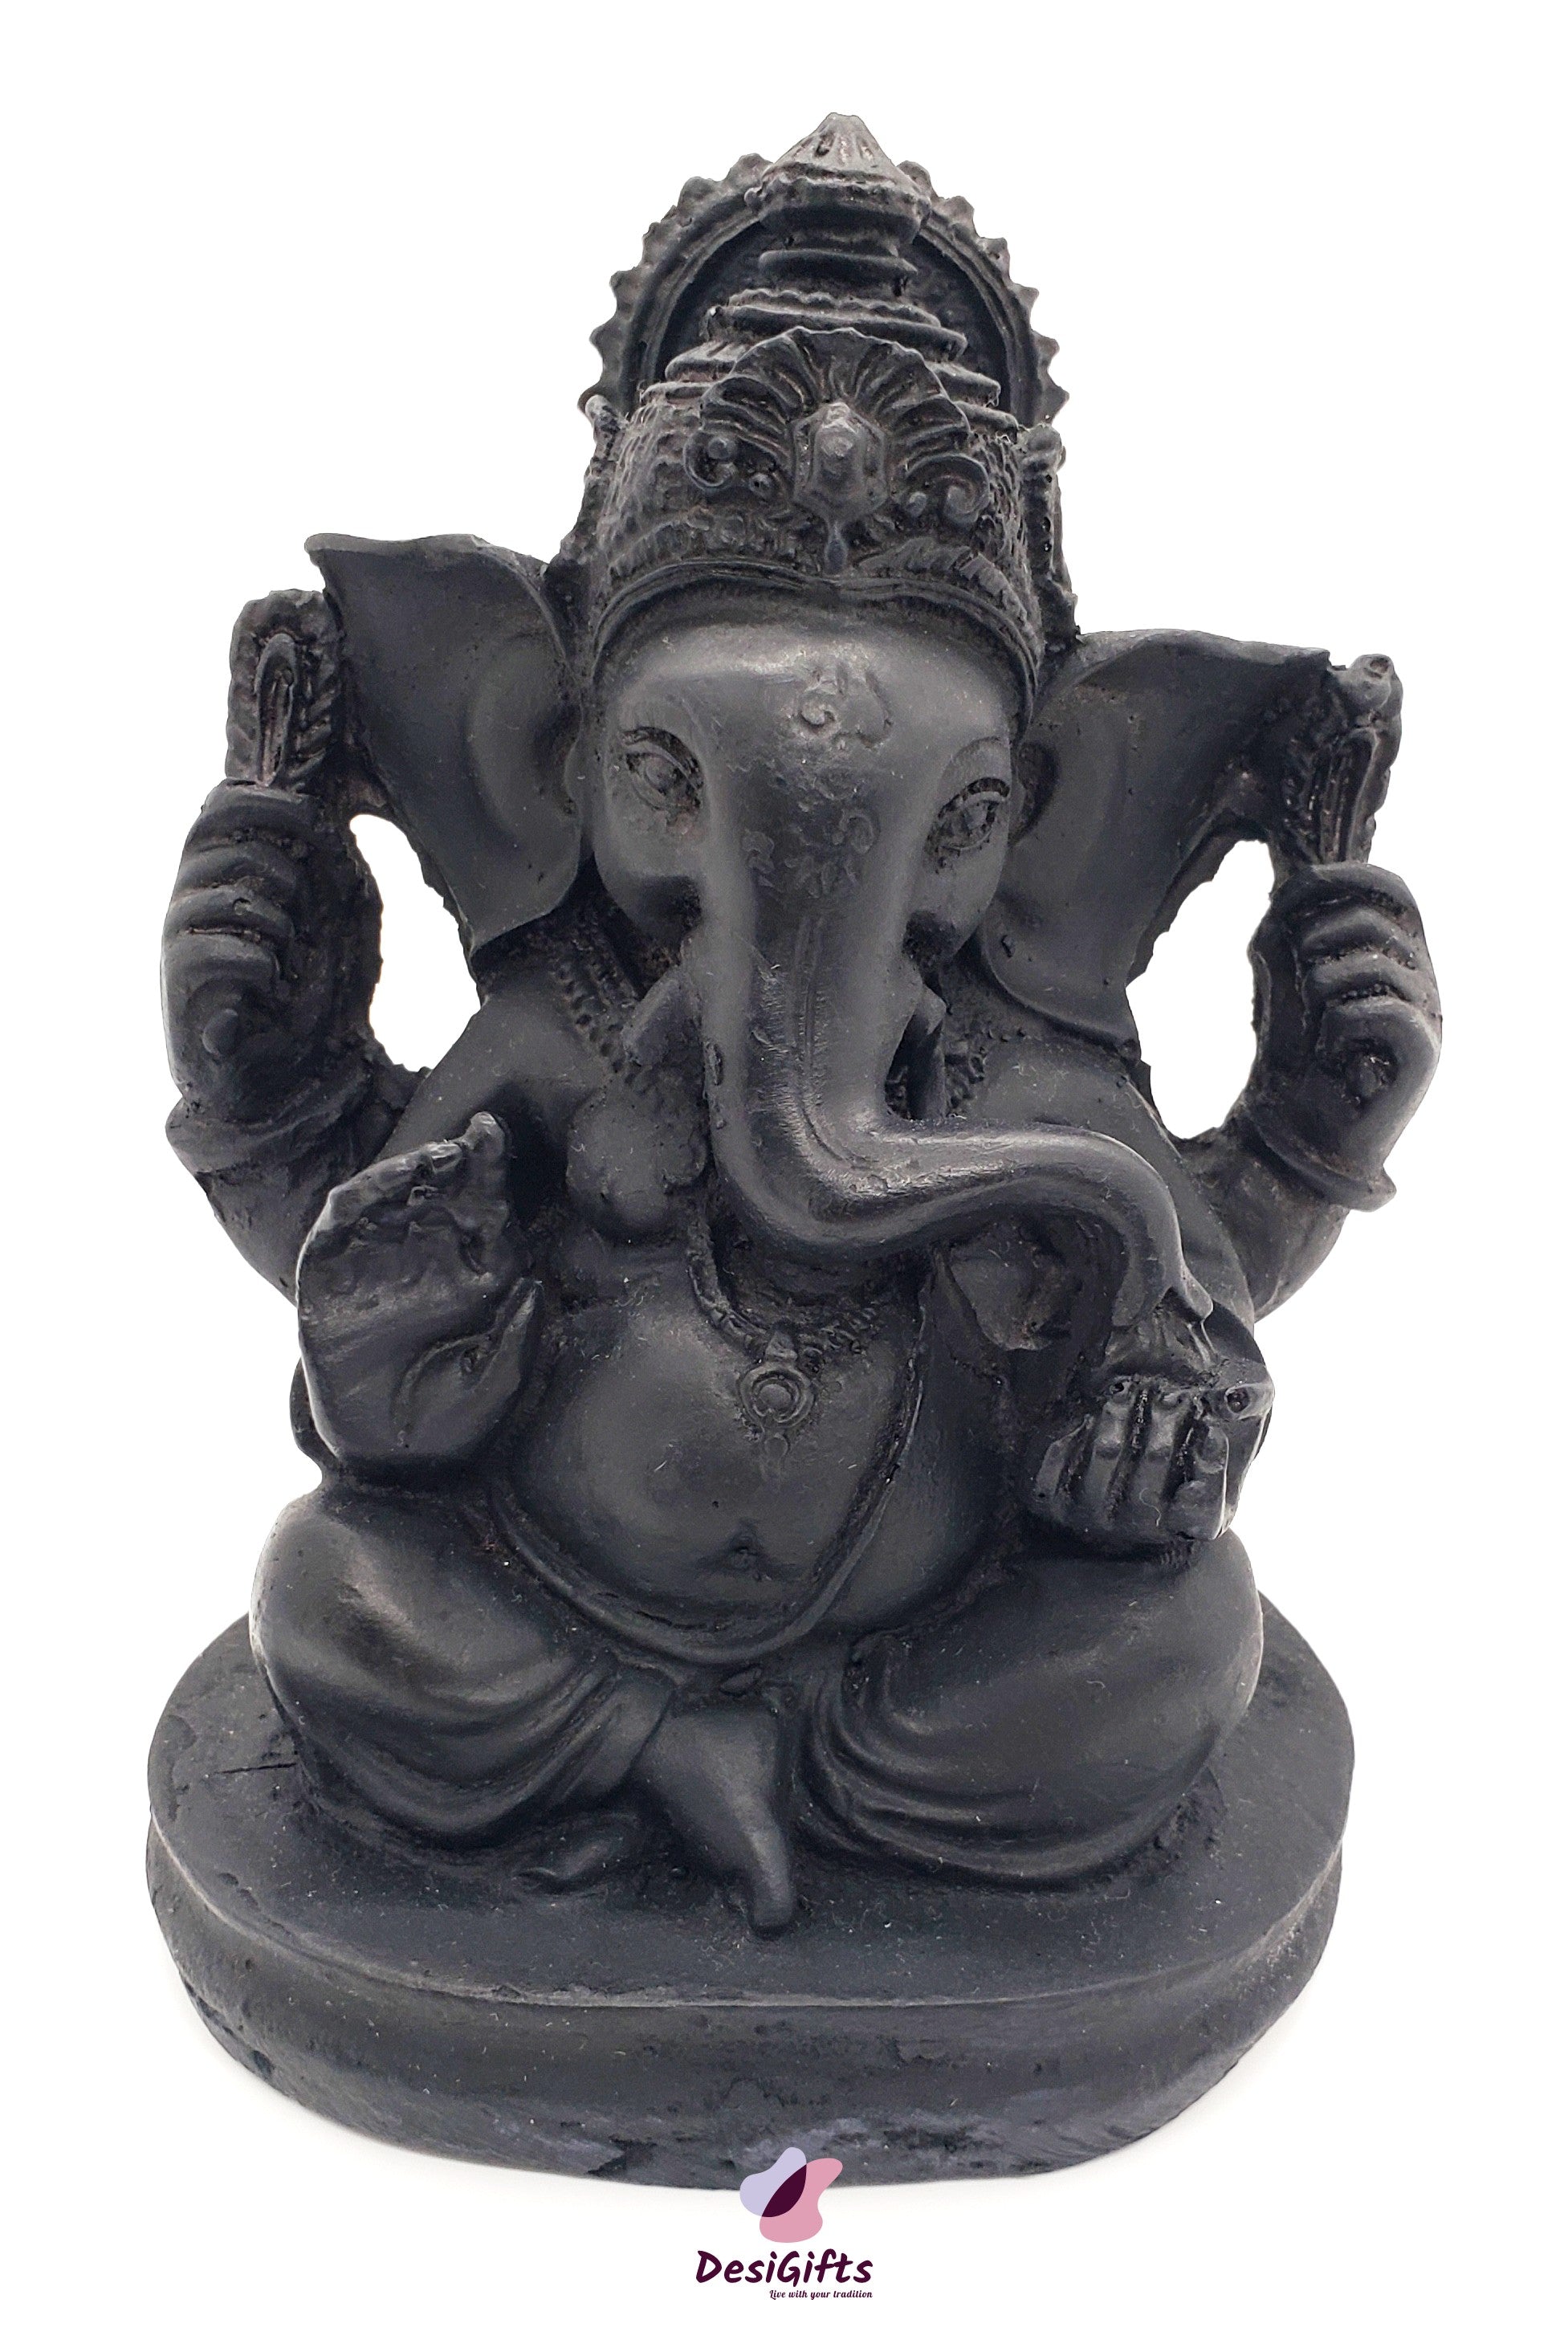 Lord Ganesha Idol- Black Polyresin, 4", GBR#108